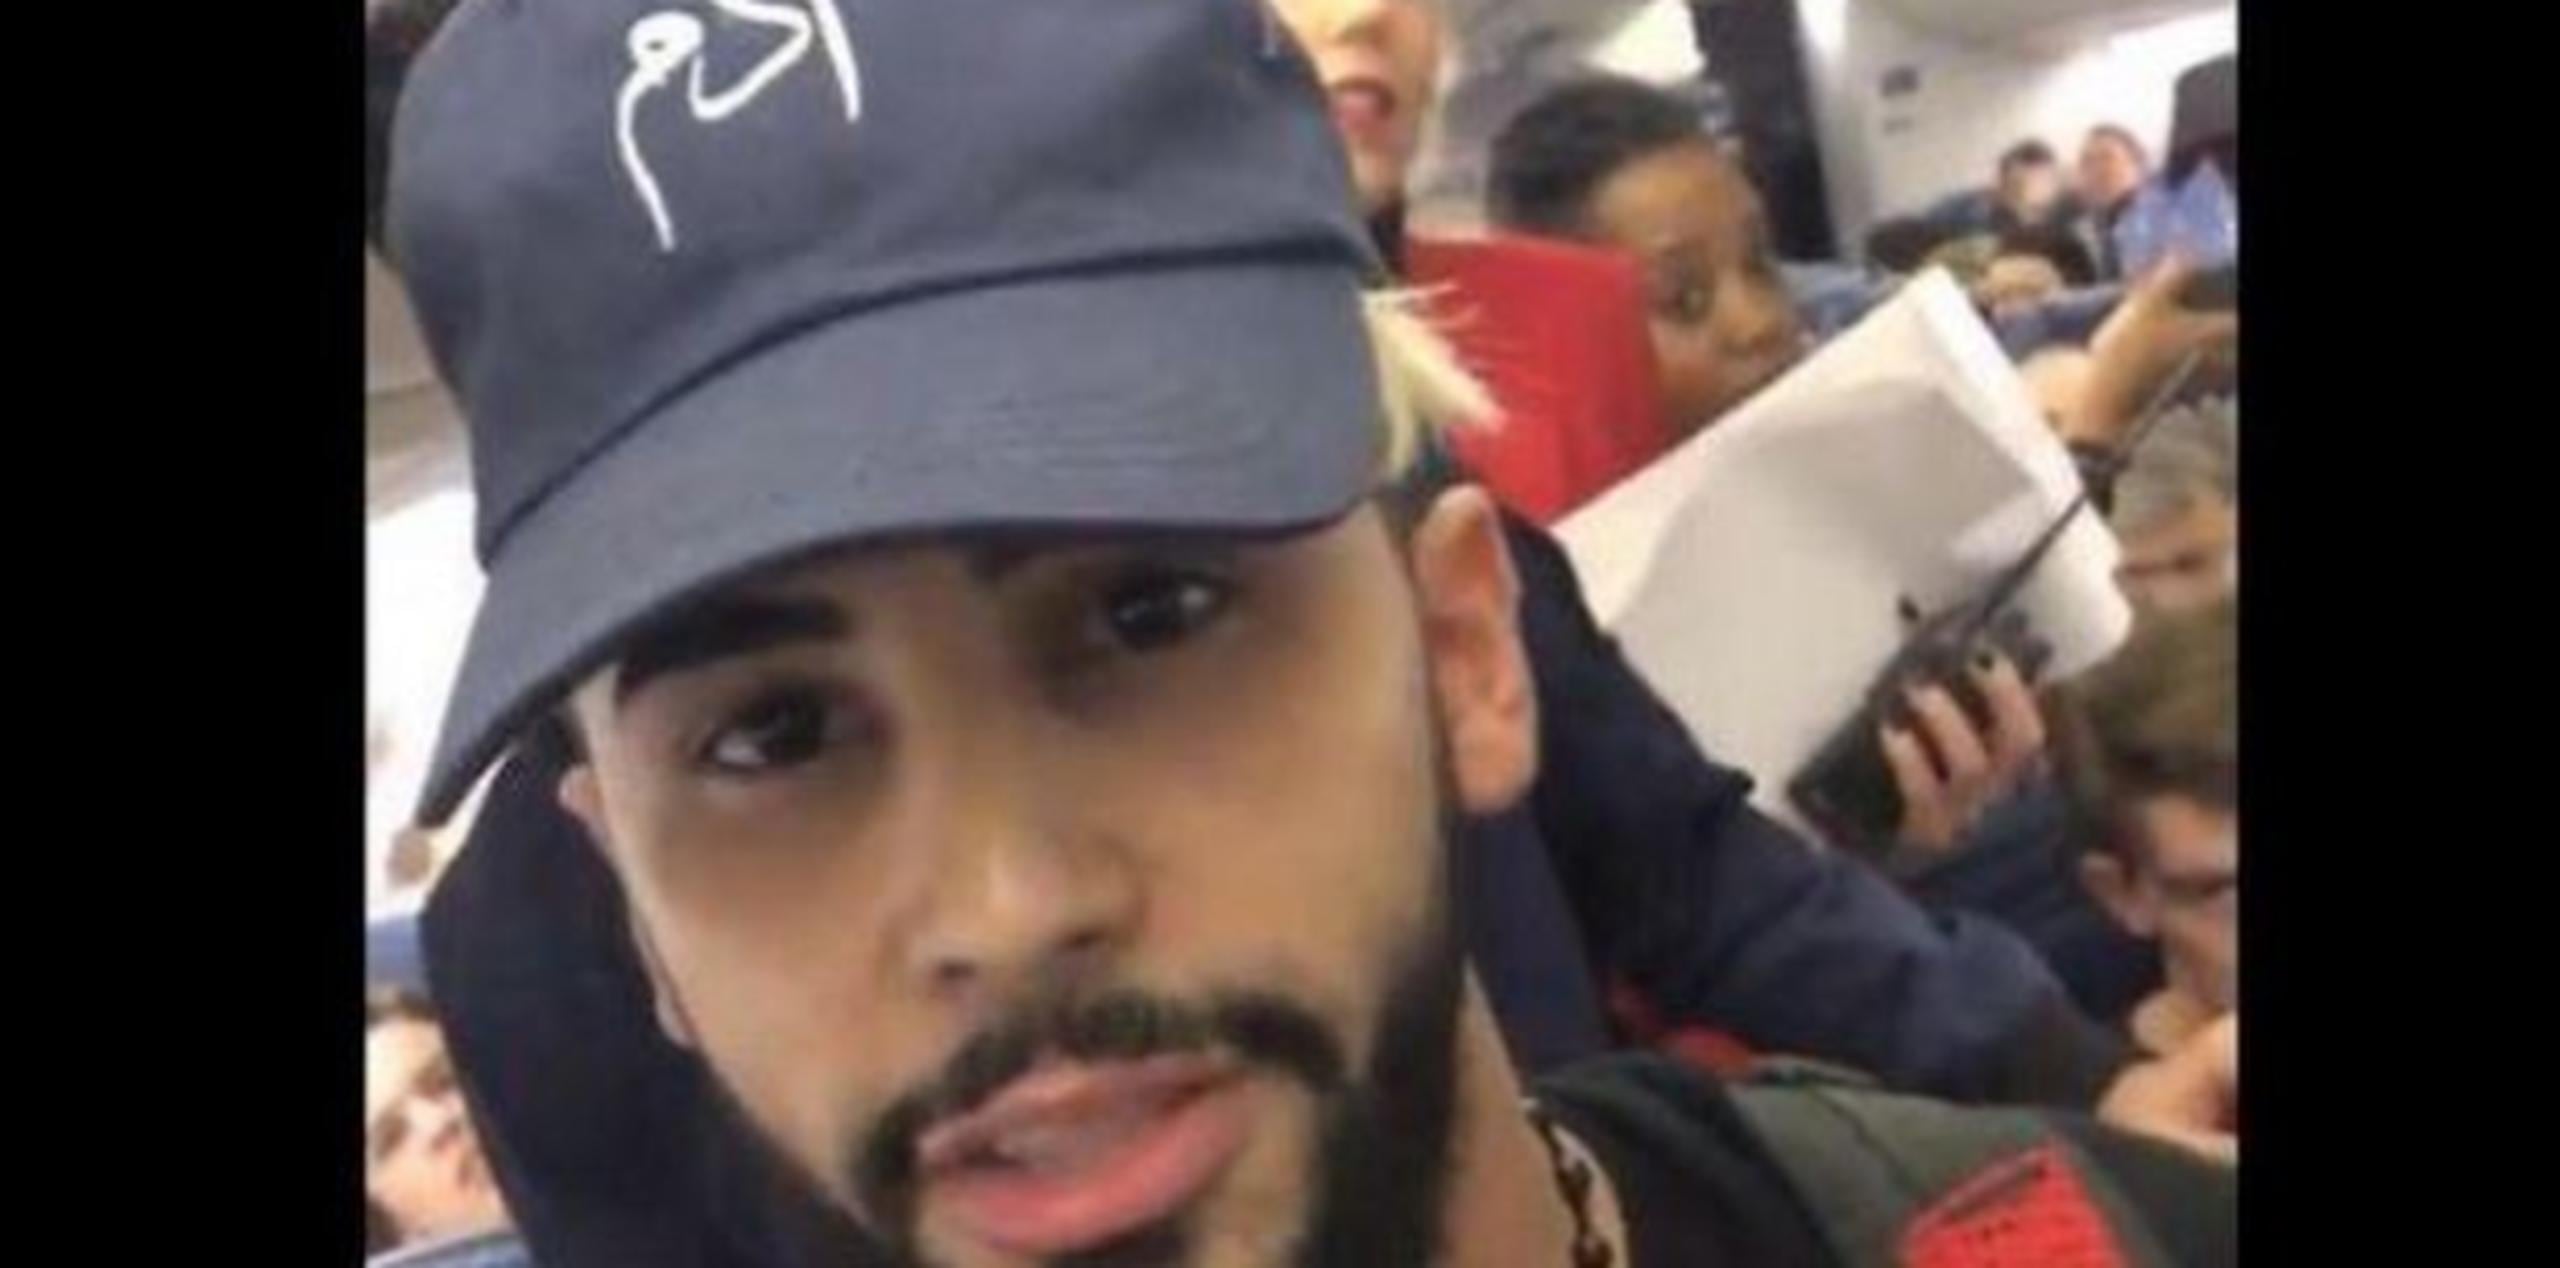 La aerolínea manifestó en su cuenta de Twitter que el neoyorkino fue retirado por "disturbios" en la cabina que causaron la incomodidad de más de 20 pasajeros. (Twitter)